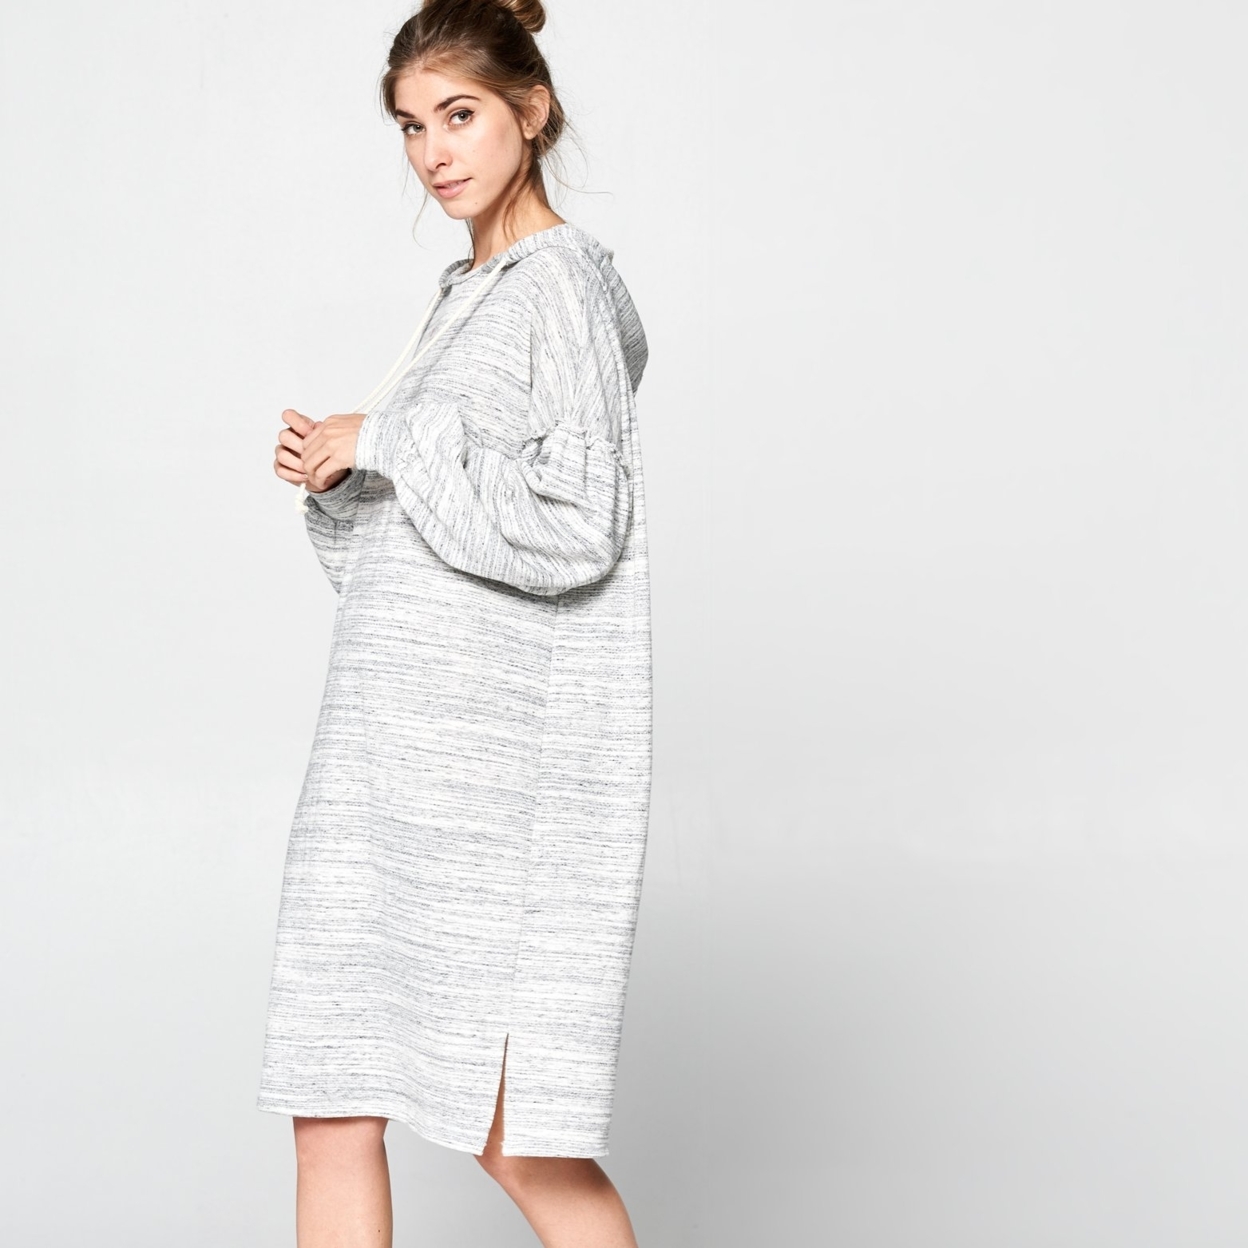 Oversized Marled Sweatshirt Dress - Marled Grey, Small (2-6)